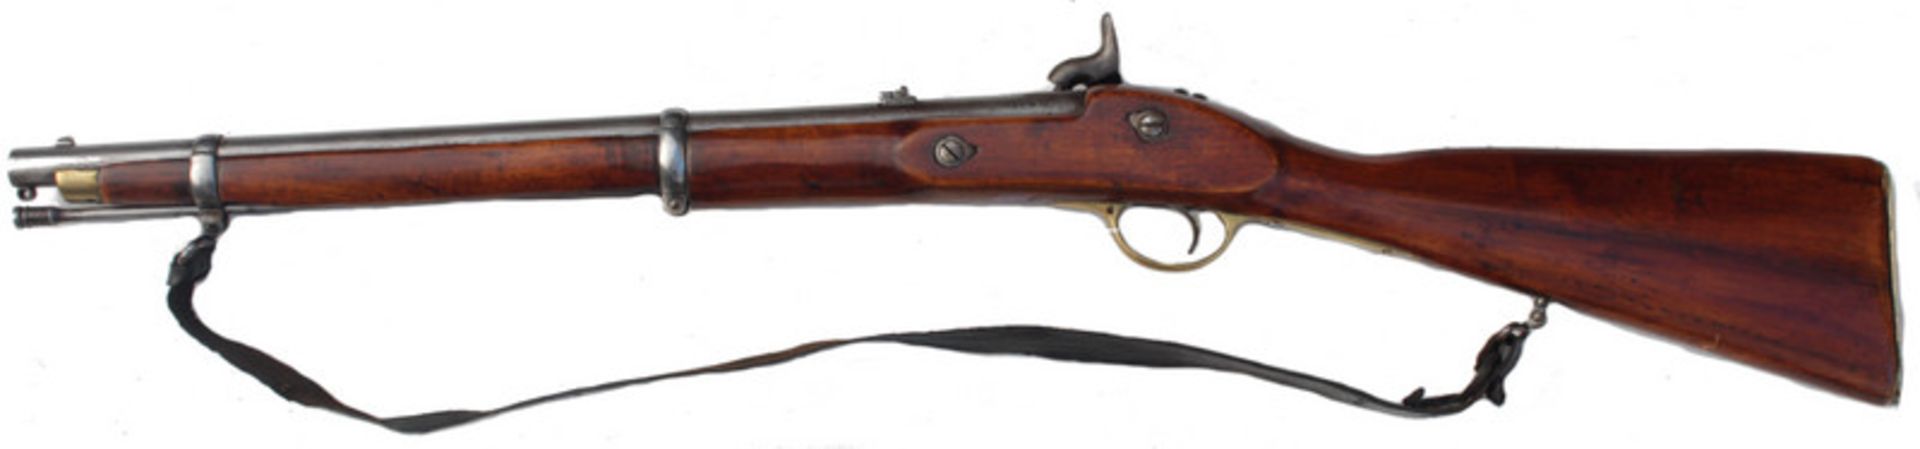 Enfield Carbine, wohl britisch-indisch, 2. H. 19. Jhd. - Bild 2 aus 12